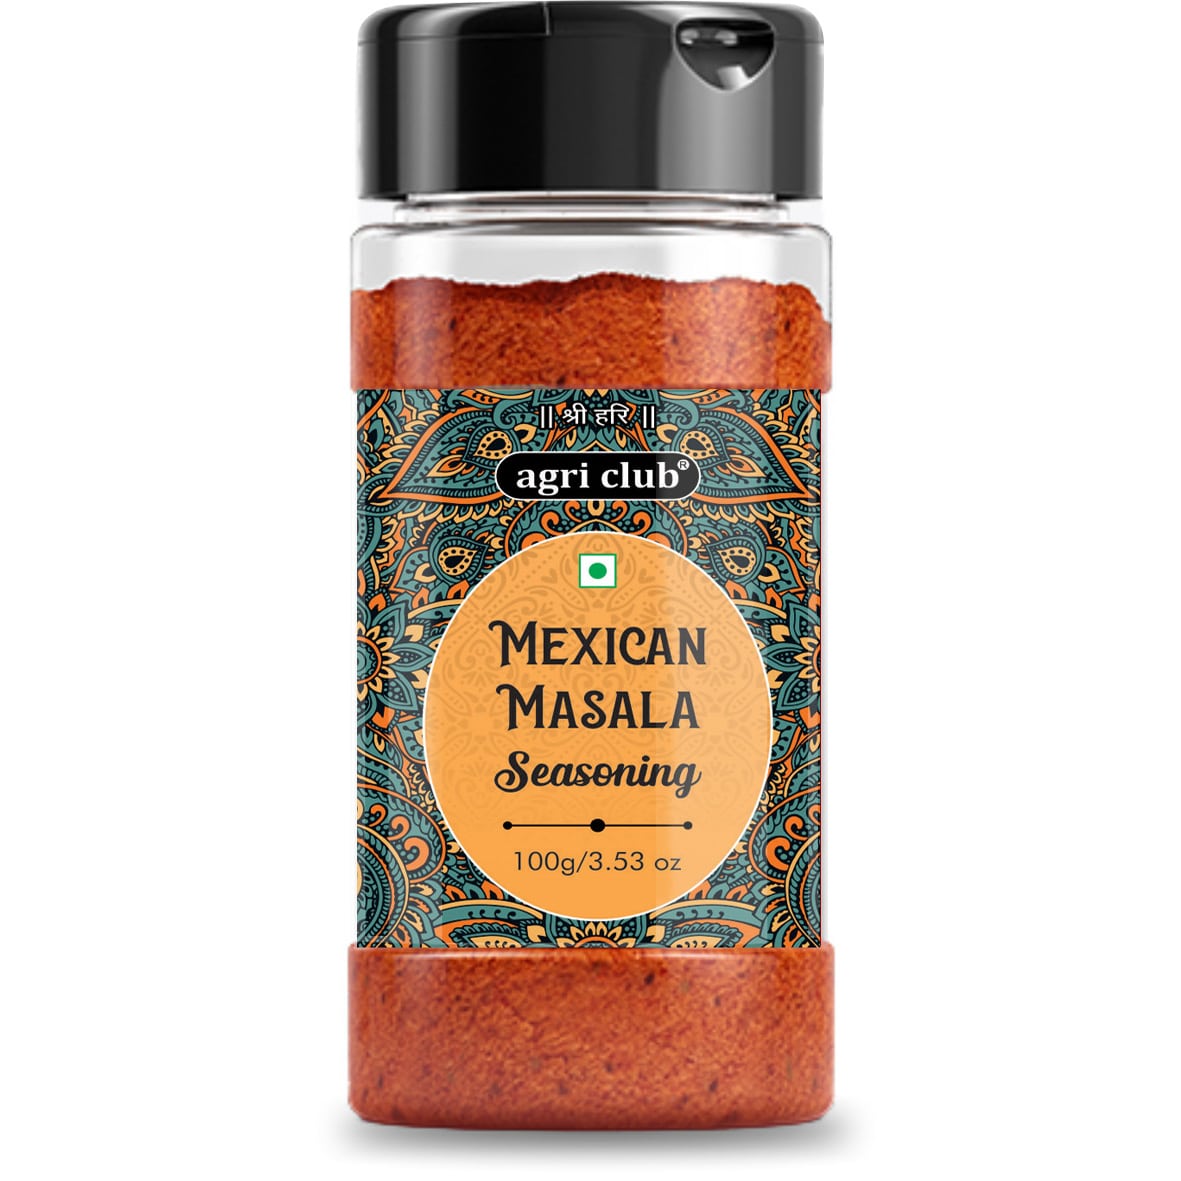 Mexican masala seasoning 100% Natural